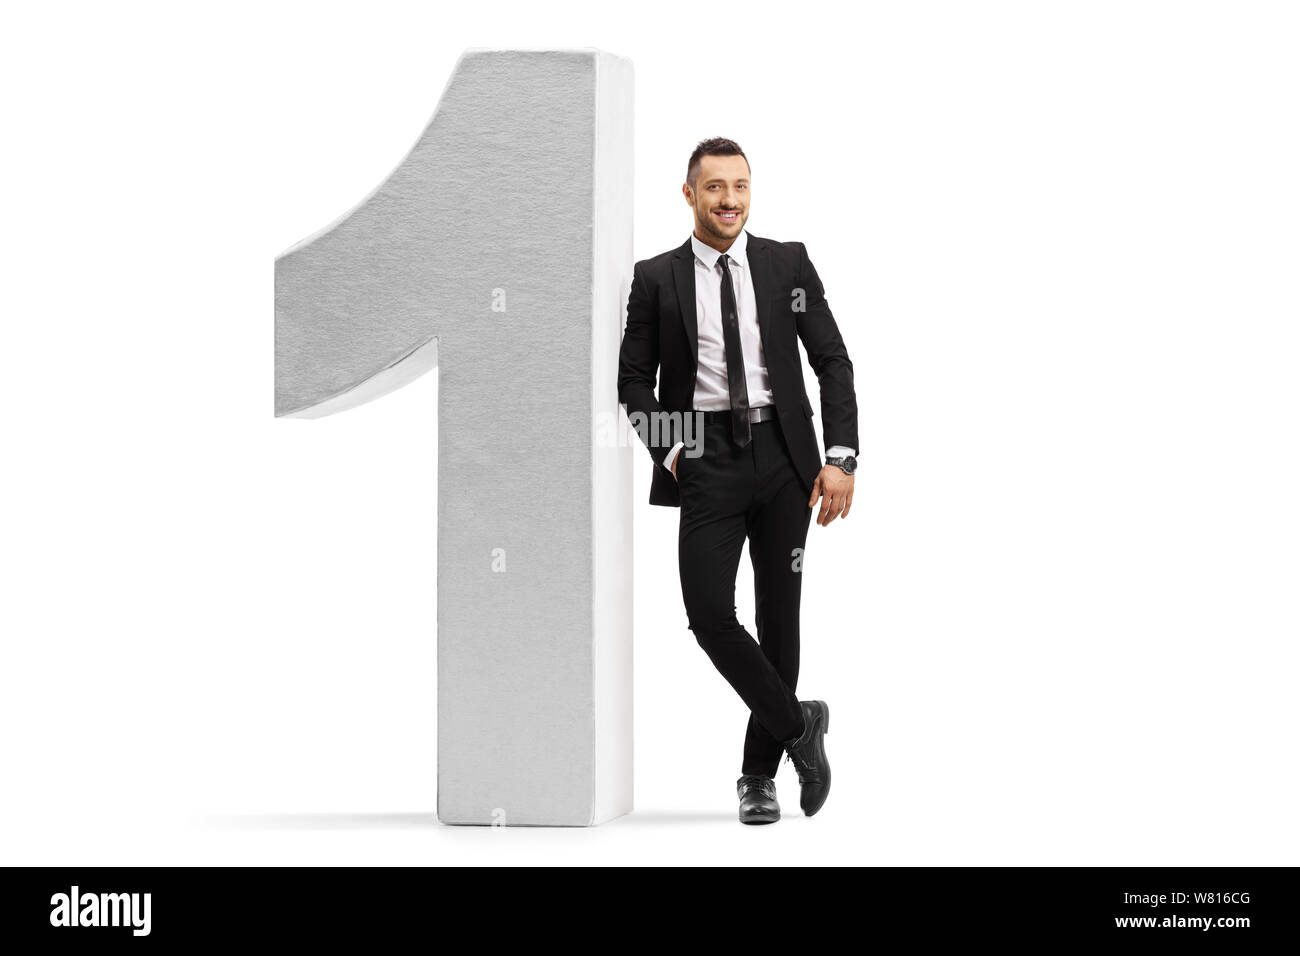 Portrait d'un homme dans un costume noir et une cravate s'appuyant sur un nombre isolé sur fond blanc Banque D'Images